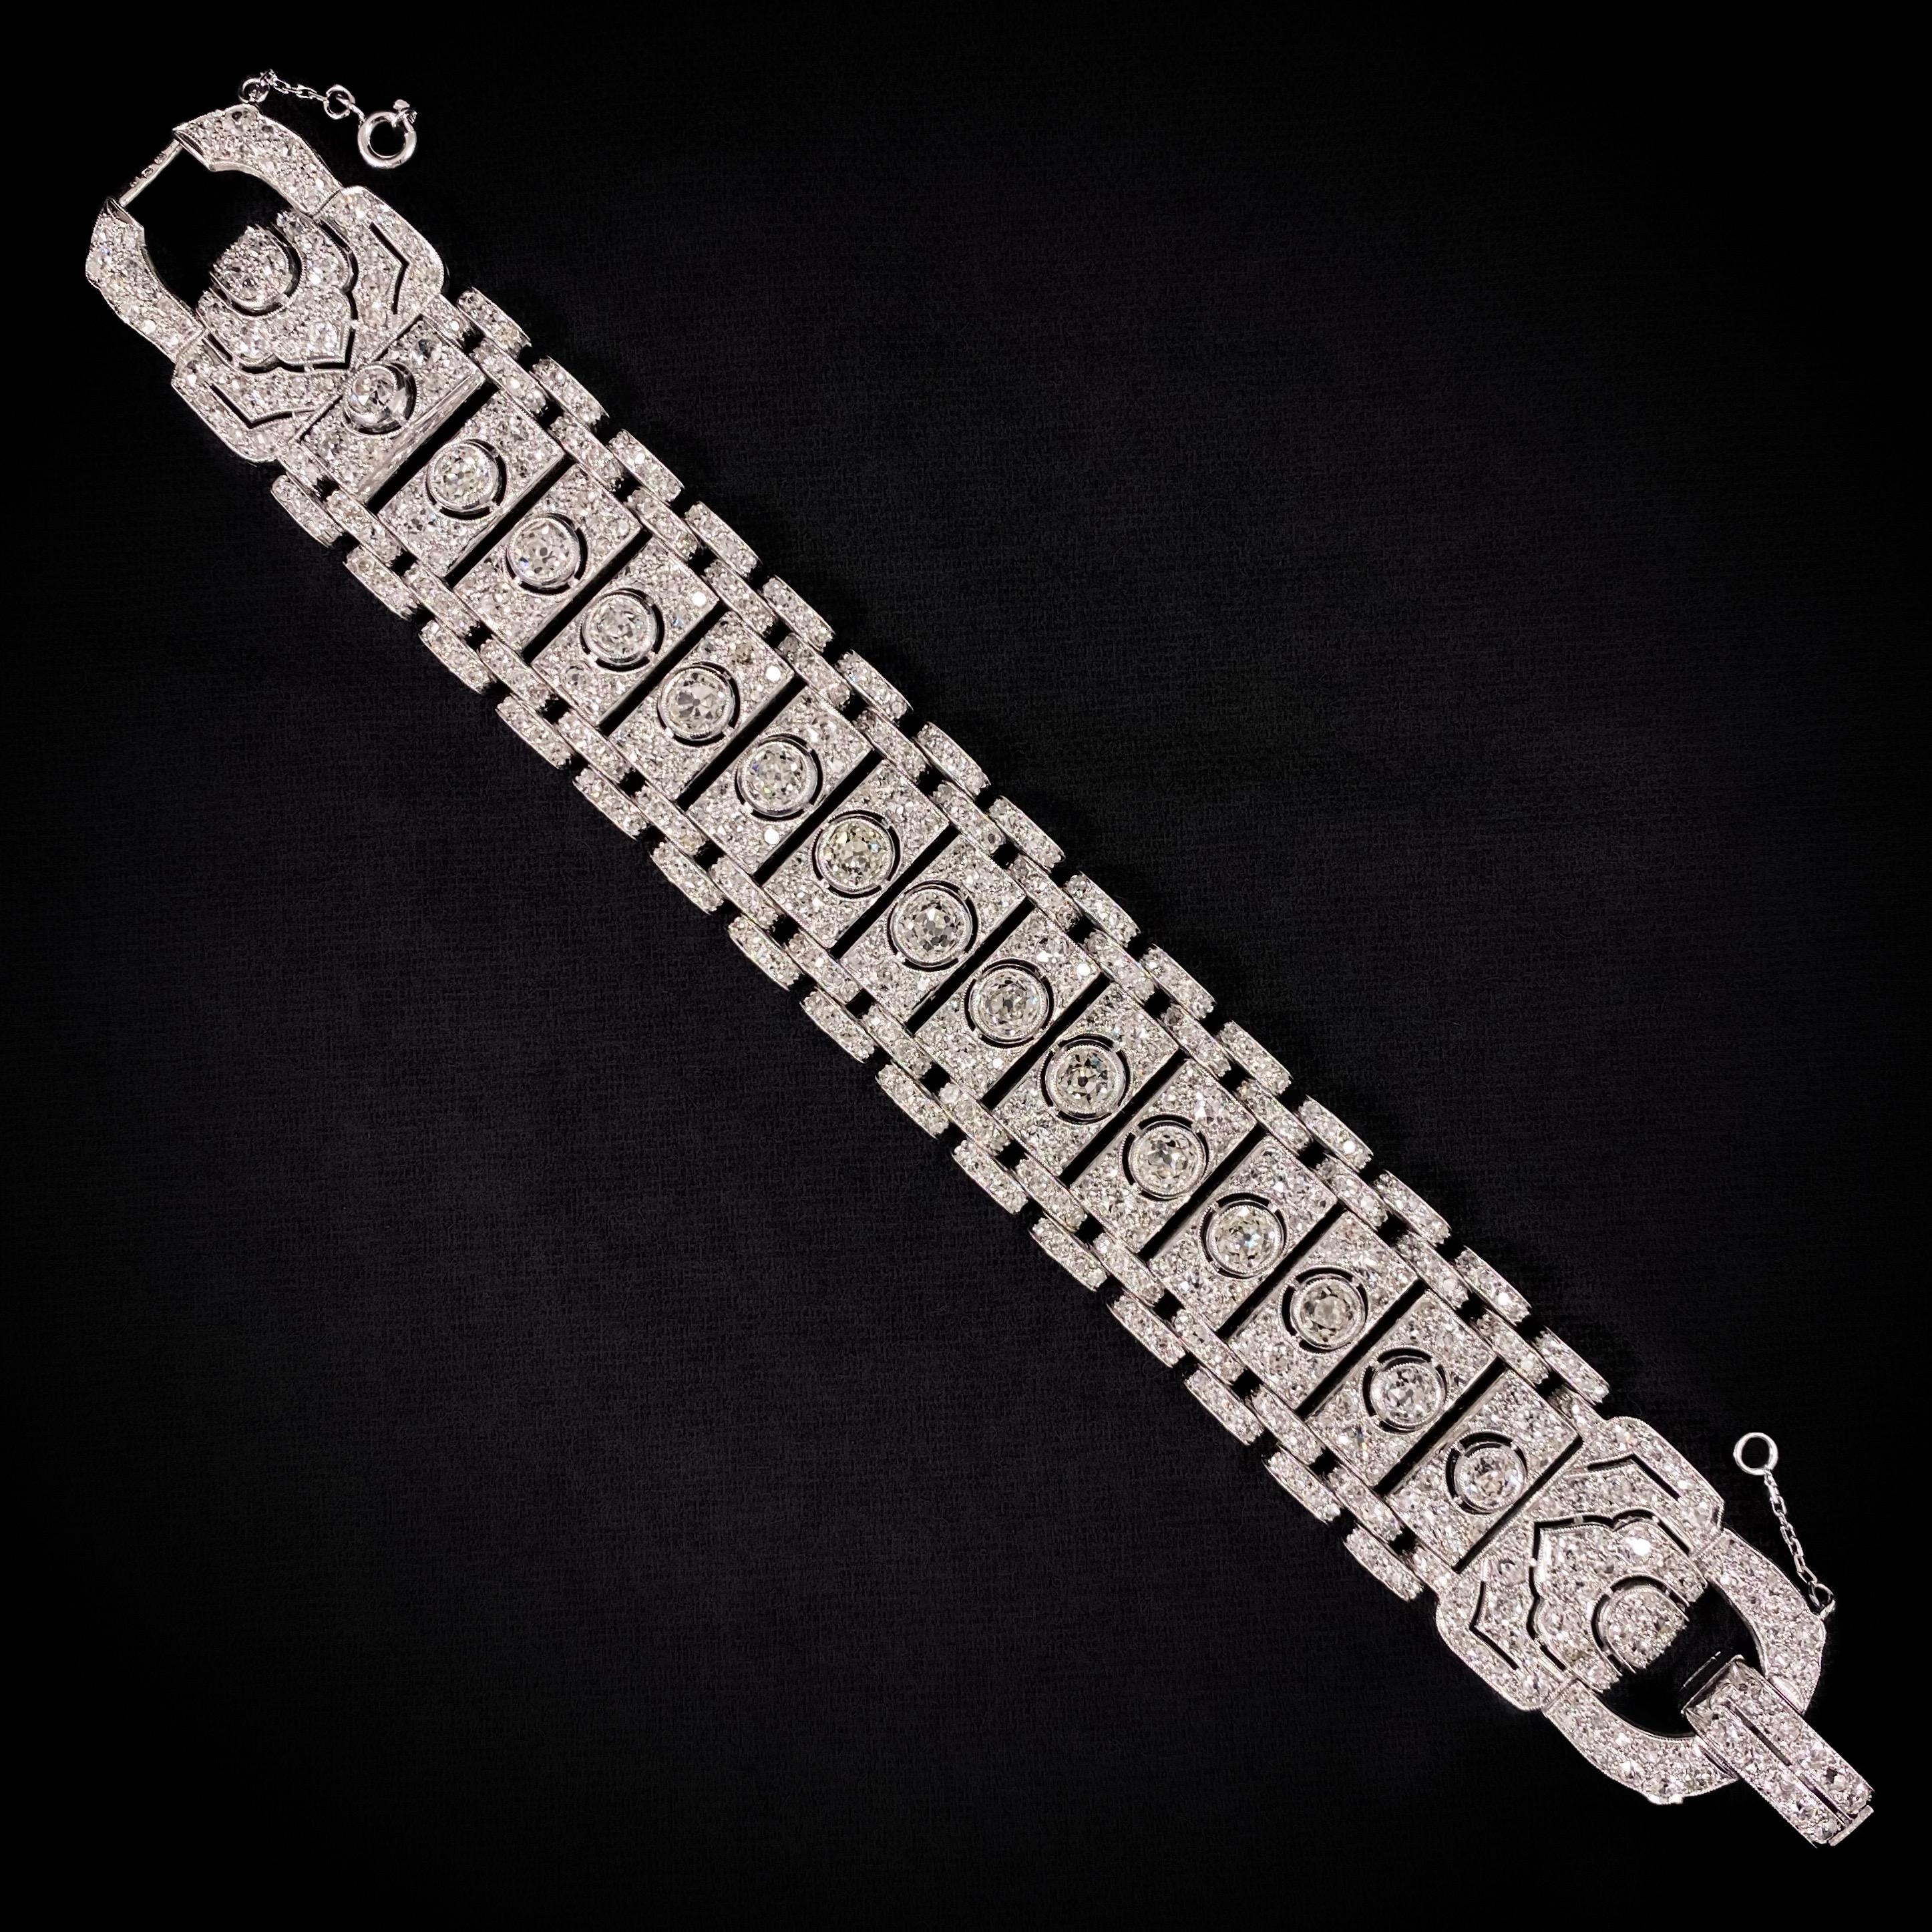 Un époustouflant bracelet réservoir à boucle géométrique en diamant Art déco de 21 carats en platine et or blanc, français, années 1930. Ce bijou se compose d'une suite de plaques de diamants pavés, rehaussées au centre d'un gros diamant taille